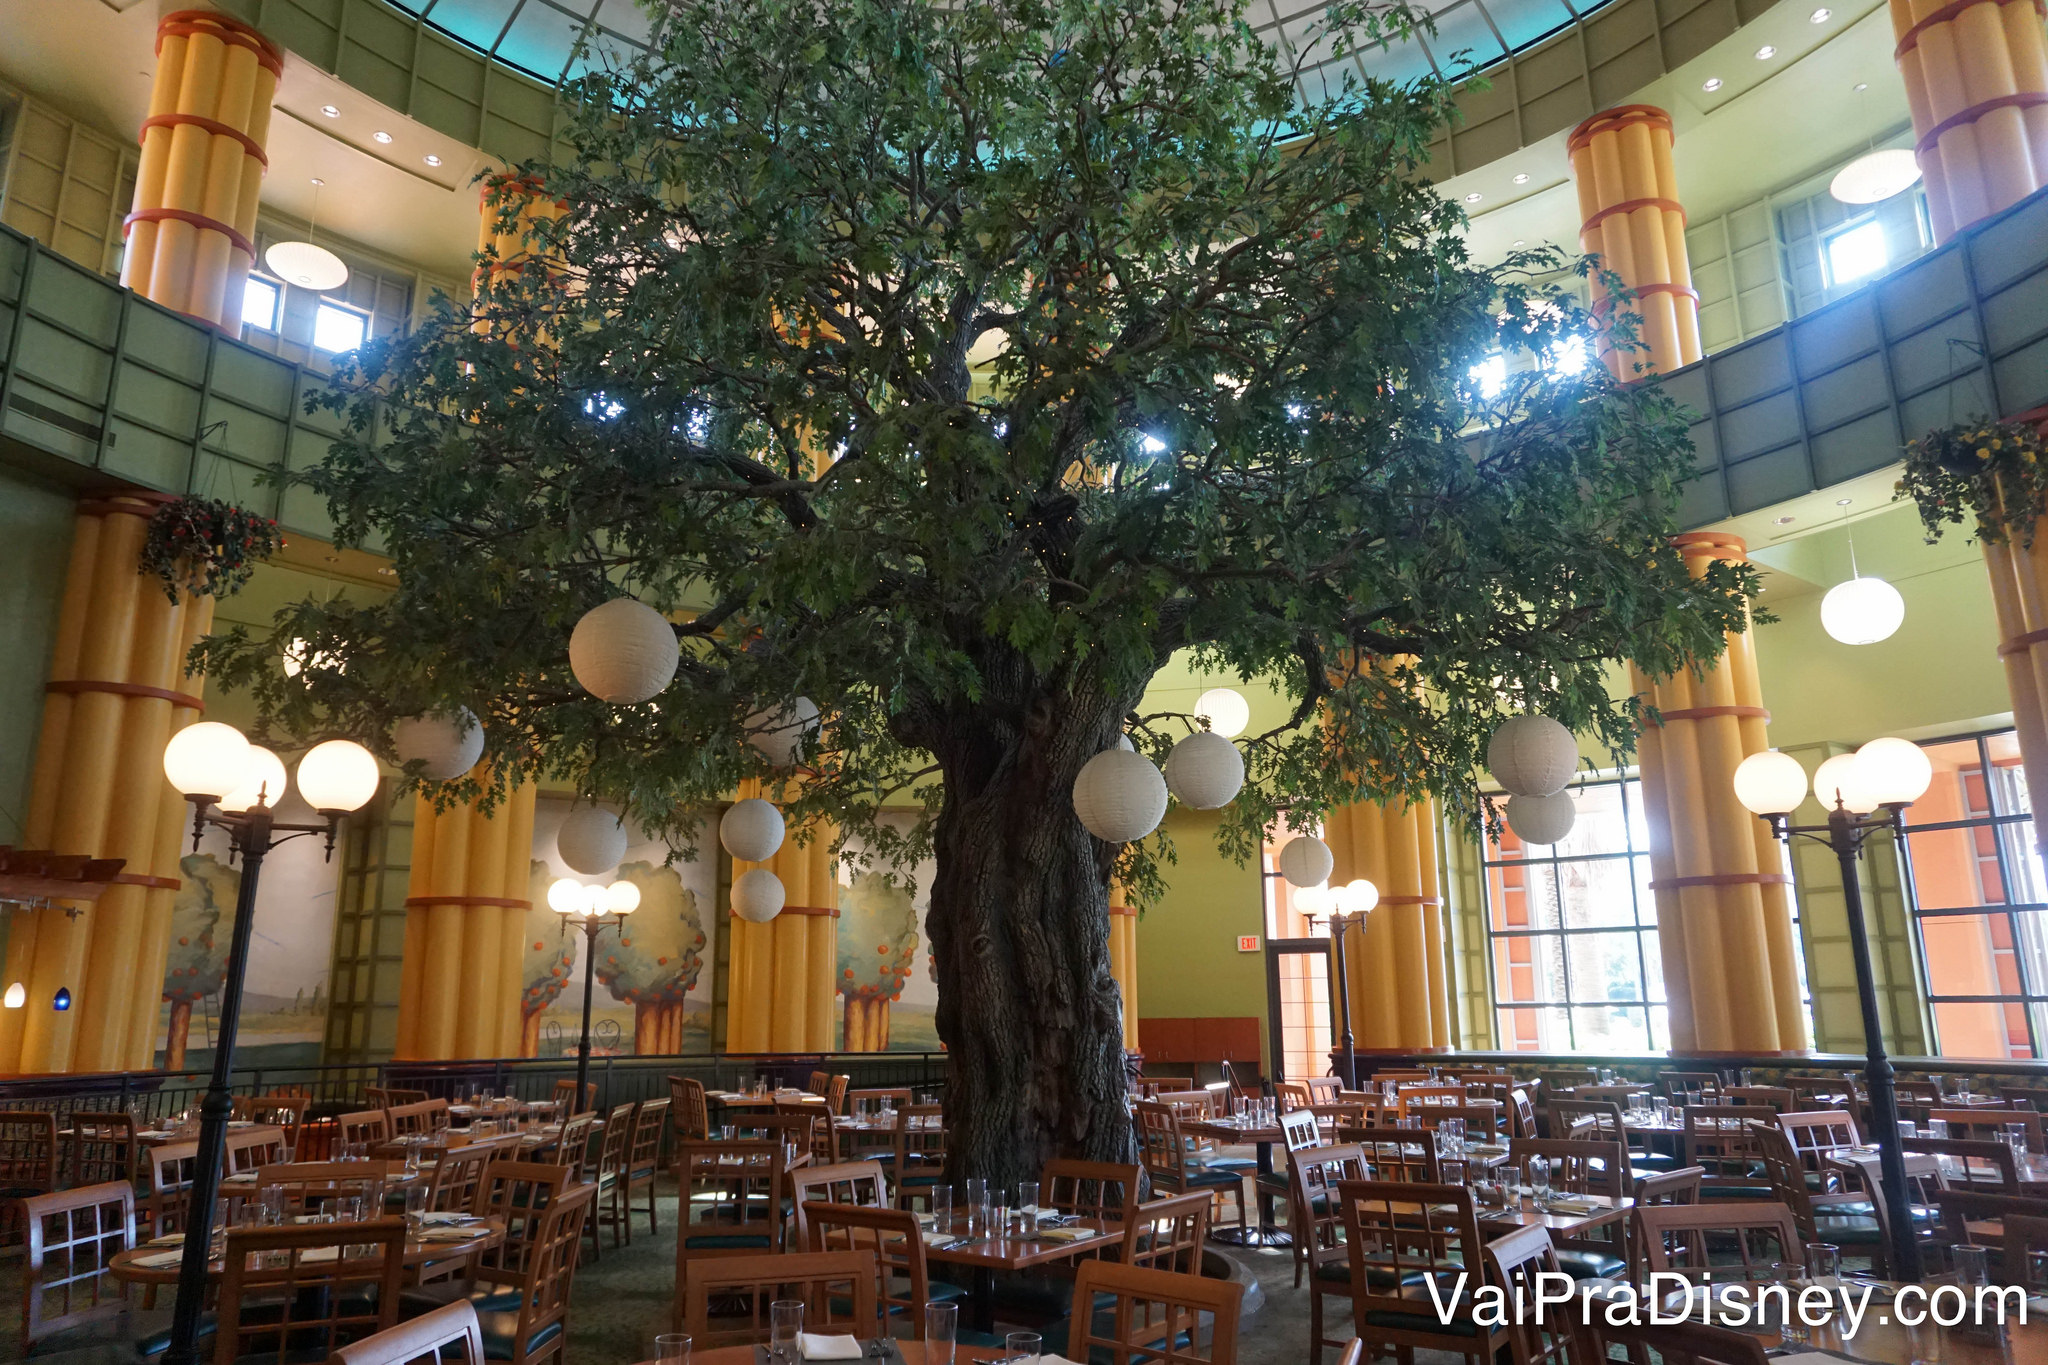 O ambiente do Garden Grove, com uma árvore enorme no centro das mesas e lâmpadas redondas penduradas nela 